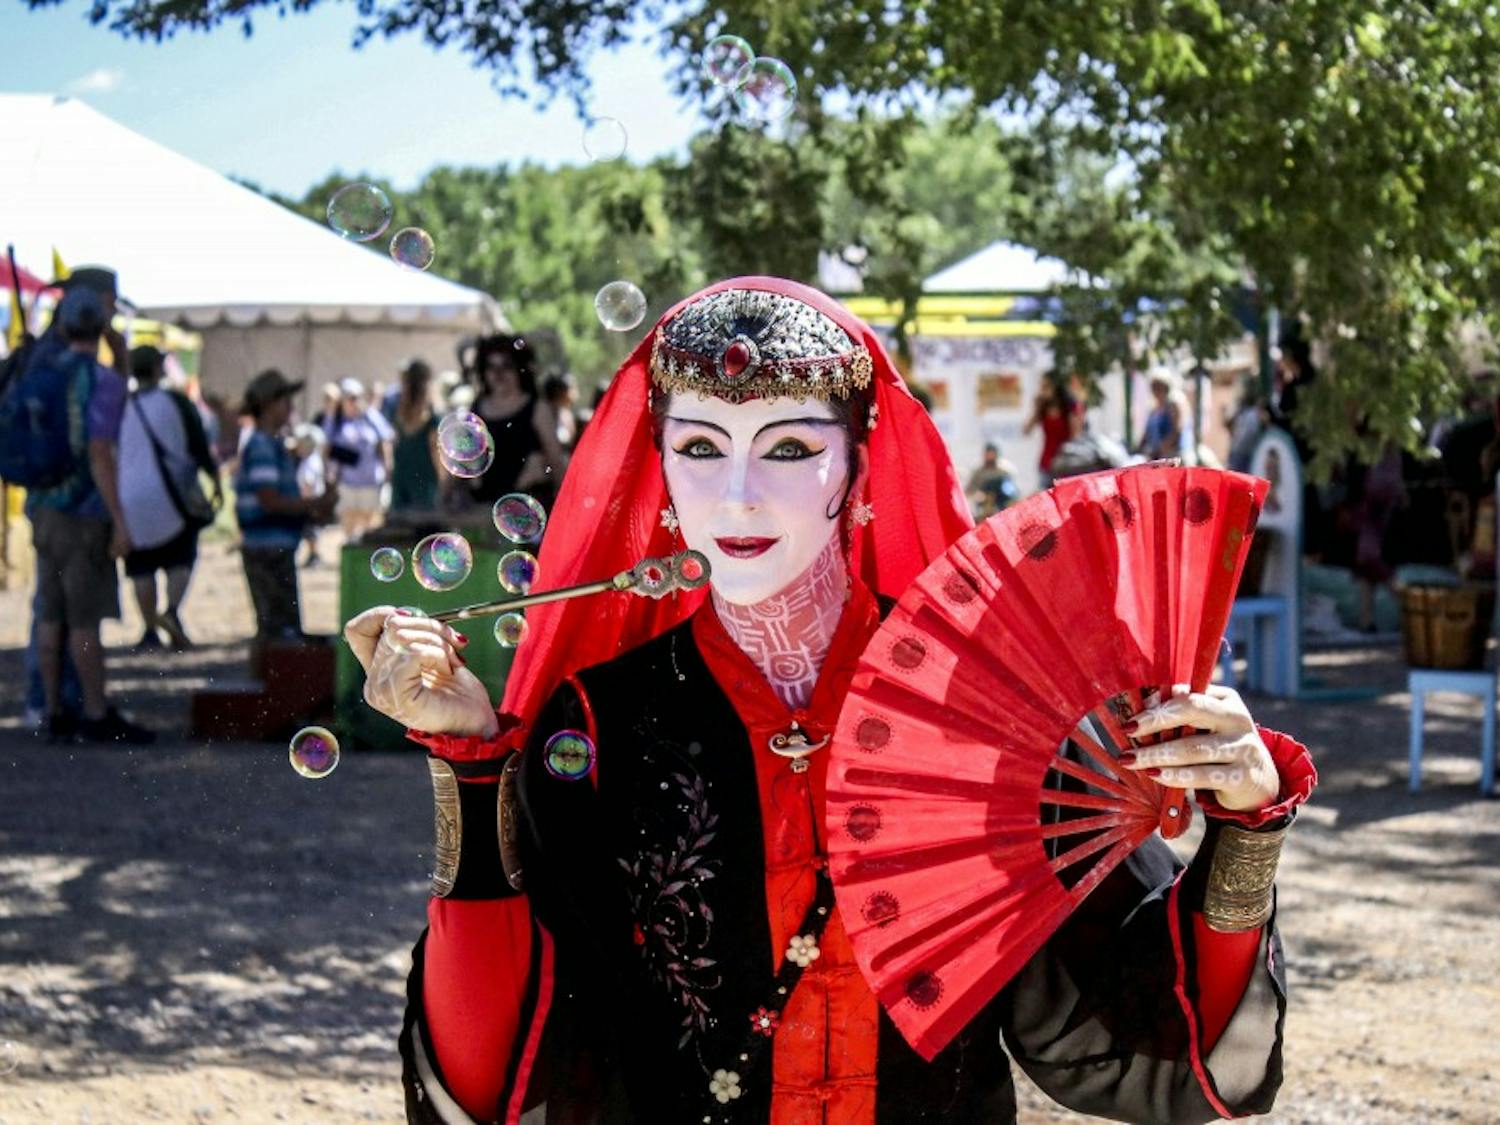 10th Annual Santa Fe Renaissance Fair